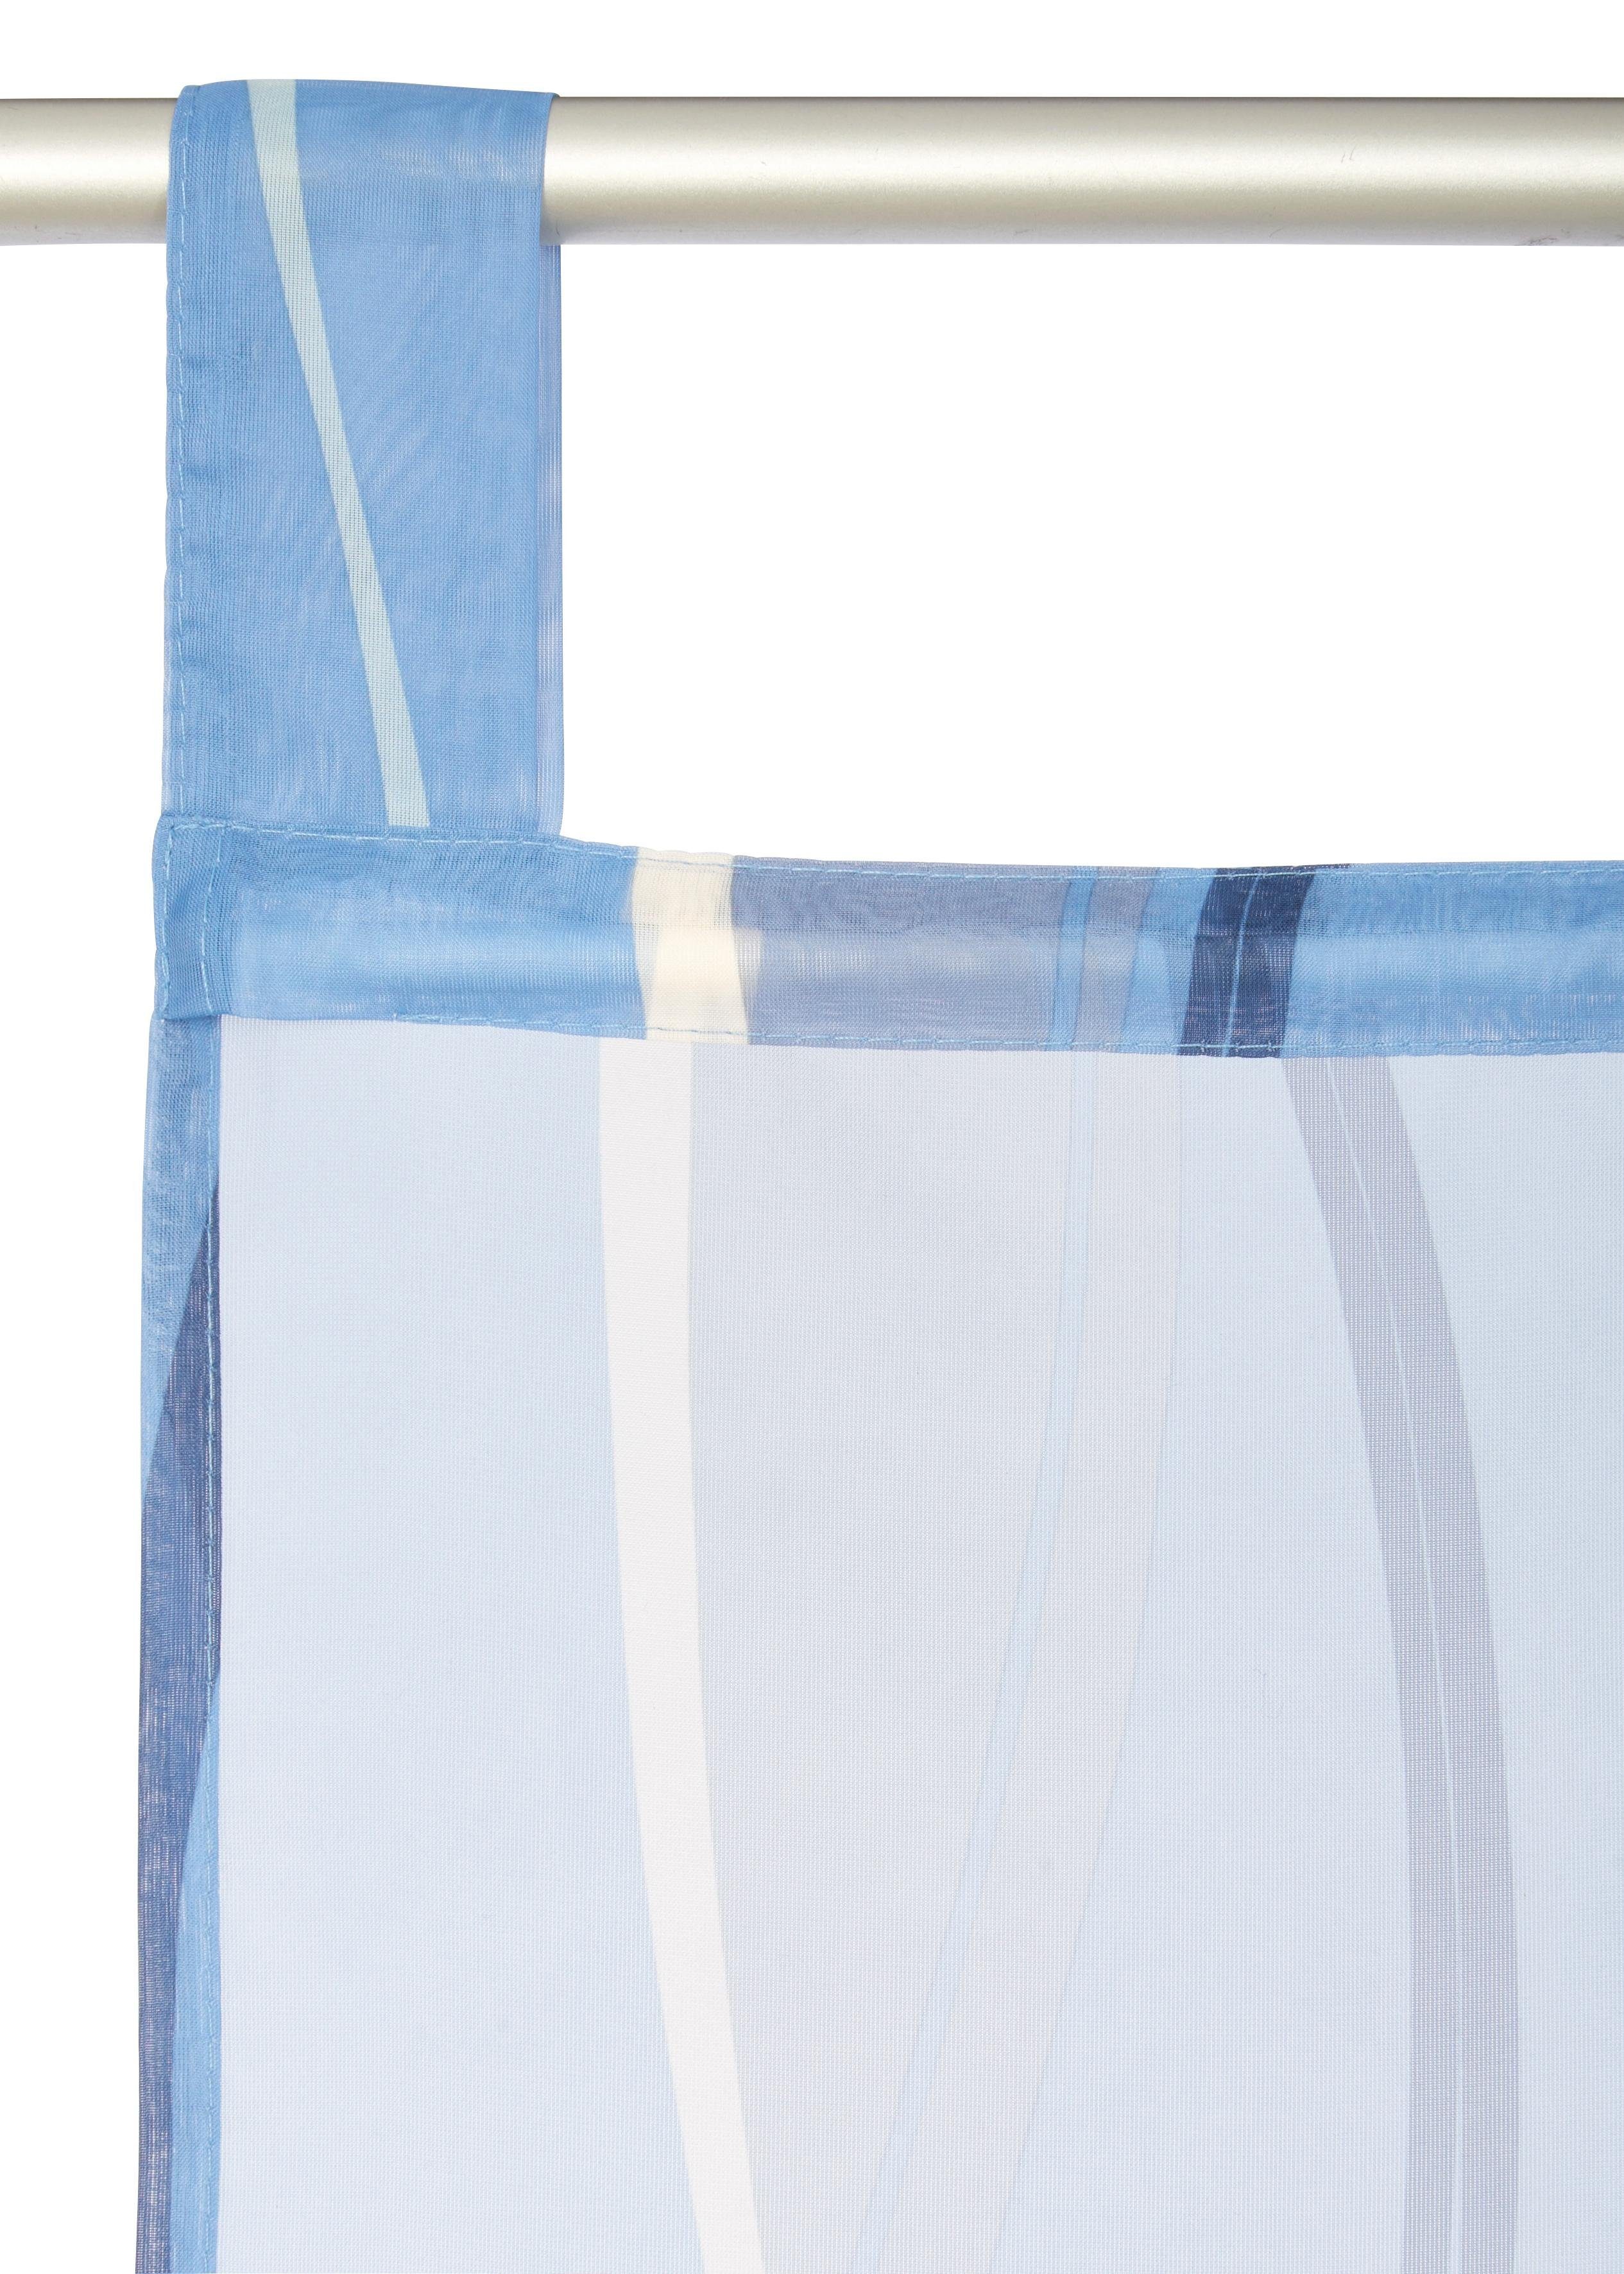 Schiebegardine Dimona, my home, (2 St), blau/weiß Beschwerungsstange, Schlaufen Voile, transparent, Wellen transparent, 2er-Set, Fertiggardine, inkl